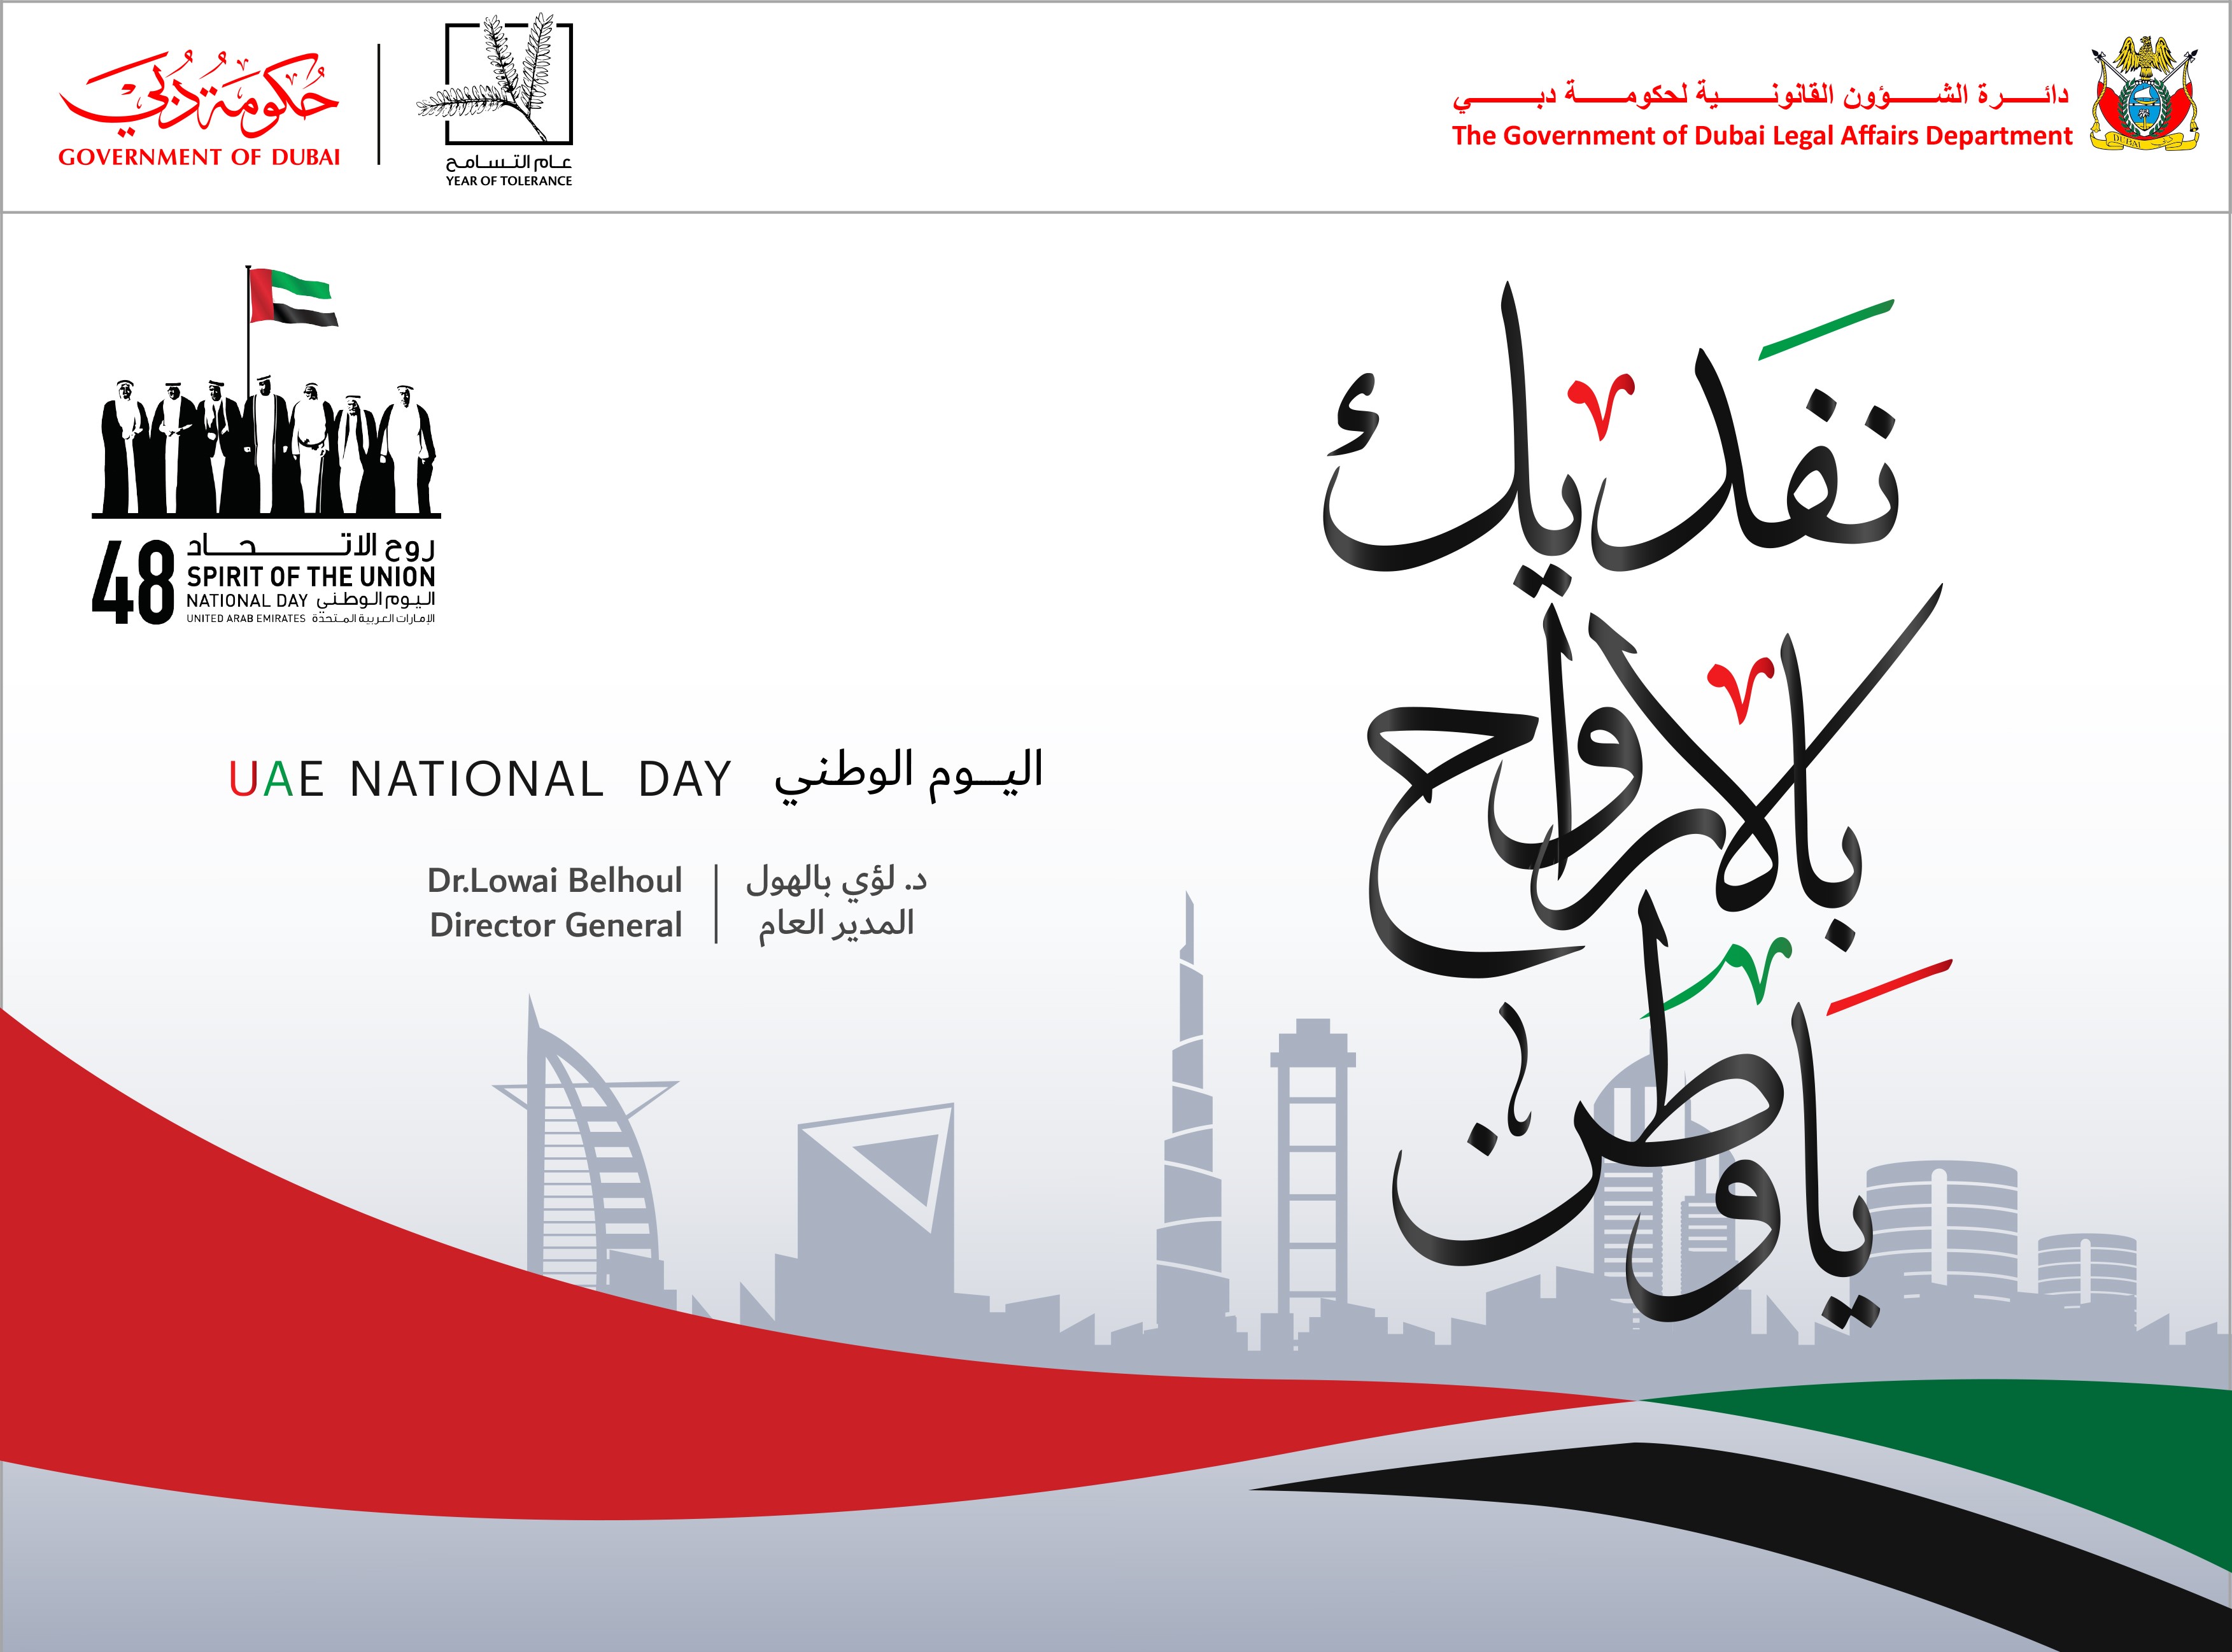 تصريح صحفي لسعادة مدير عام دائرة الشؤون القانونية لحكومة دبي  بمناسبة اليوم الوطني الثامن والأربعين لدولة الإمارات